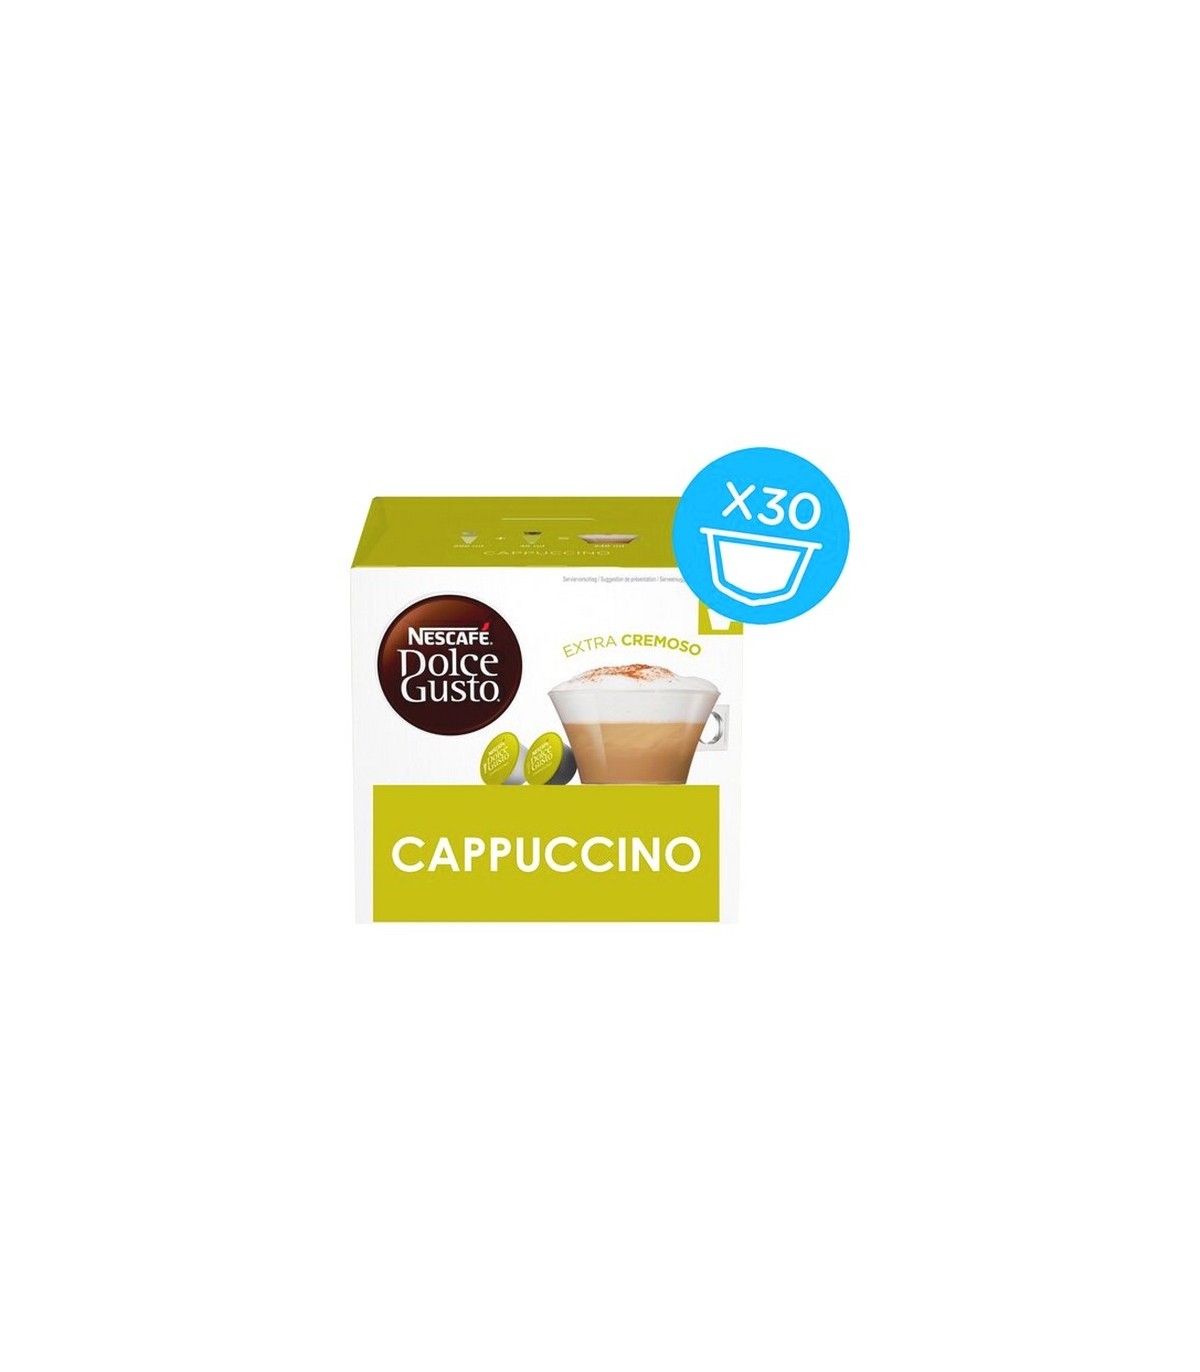 Cápsulas Cappucino by Nescafé ® Dolce Gusto ®